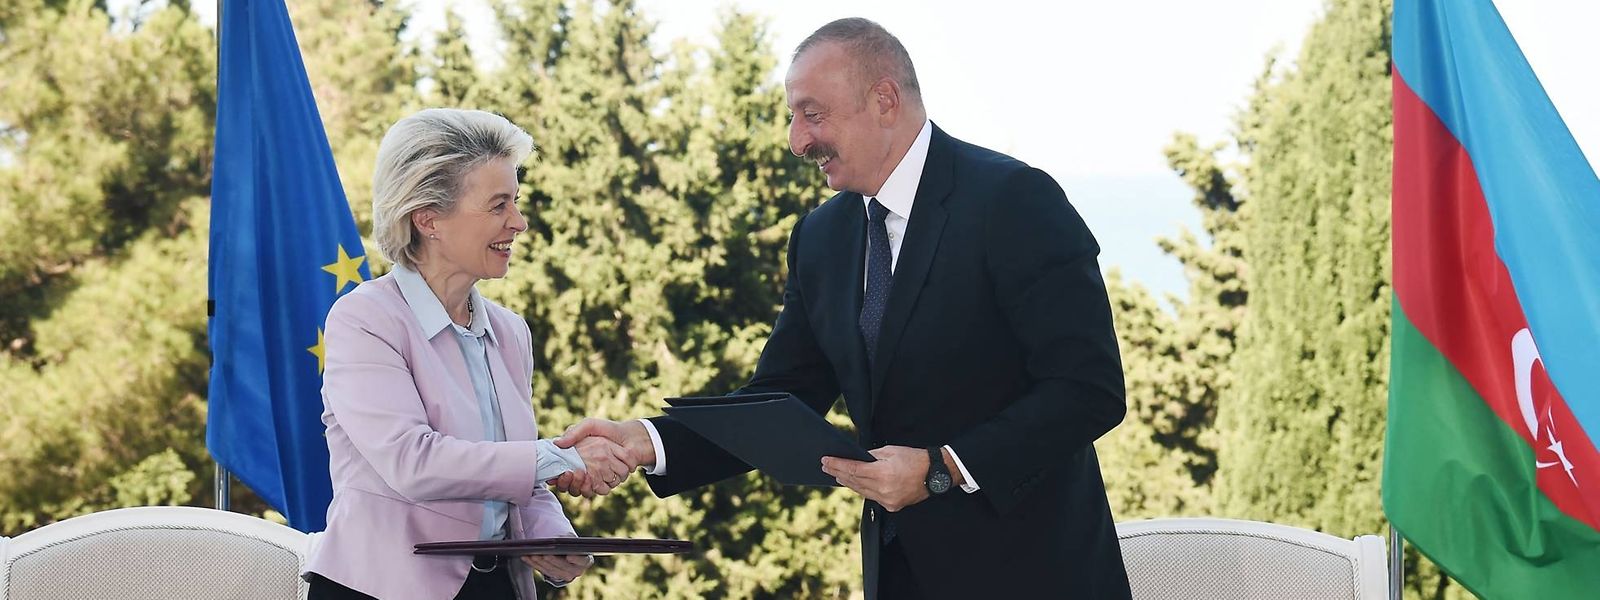 Ursula von der Leyen besiegelte diese Woche ein Gasabkommen mit dem aserbaidschanischen Staatschef Ilham Aliyev.